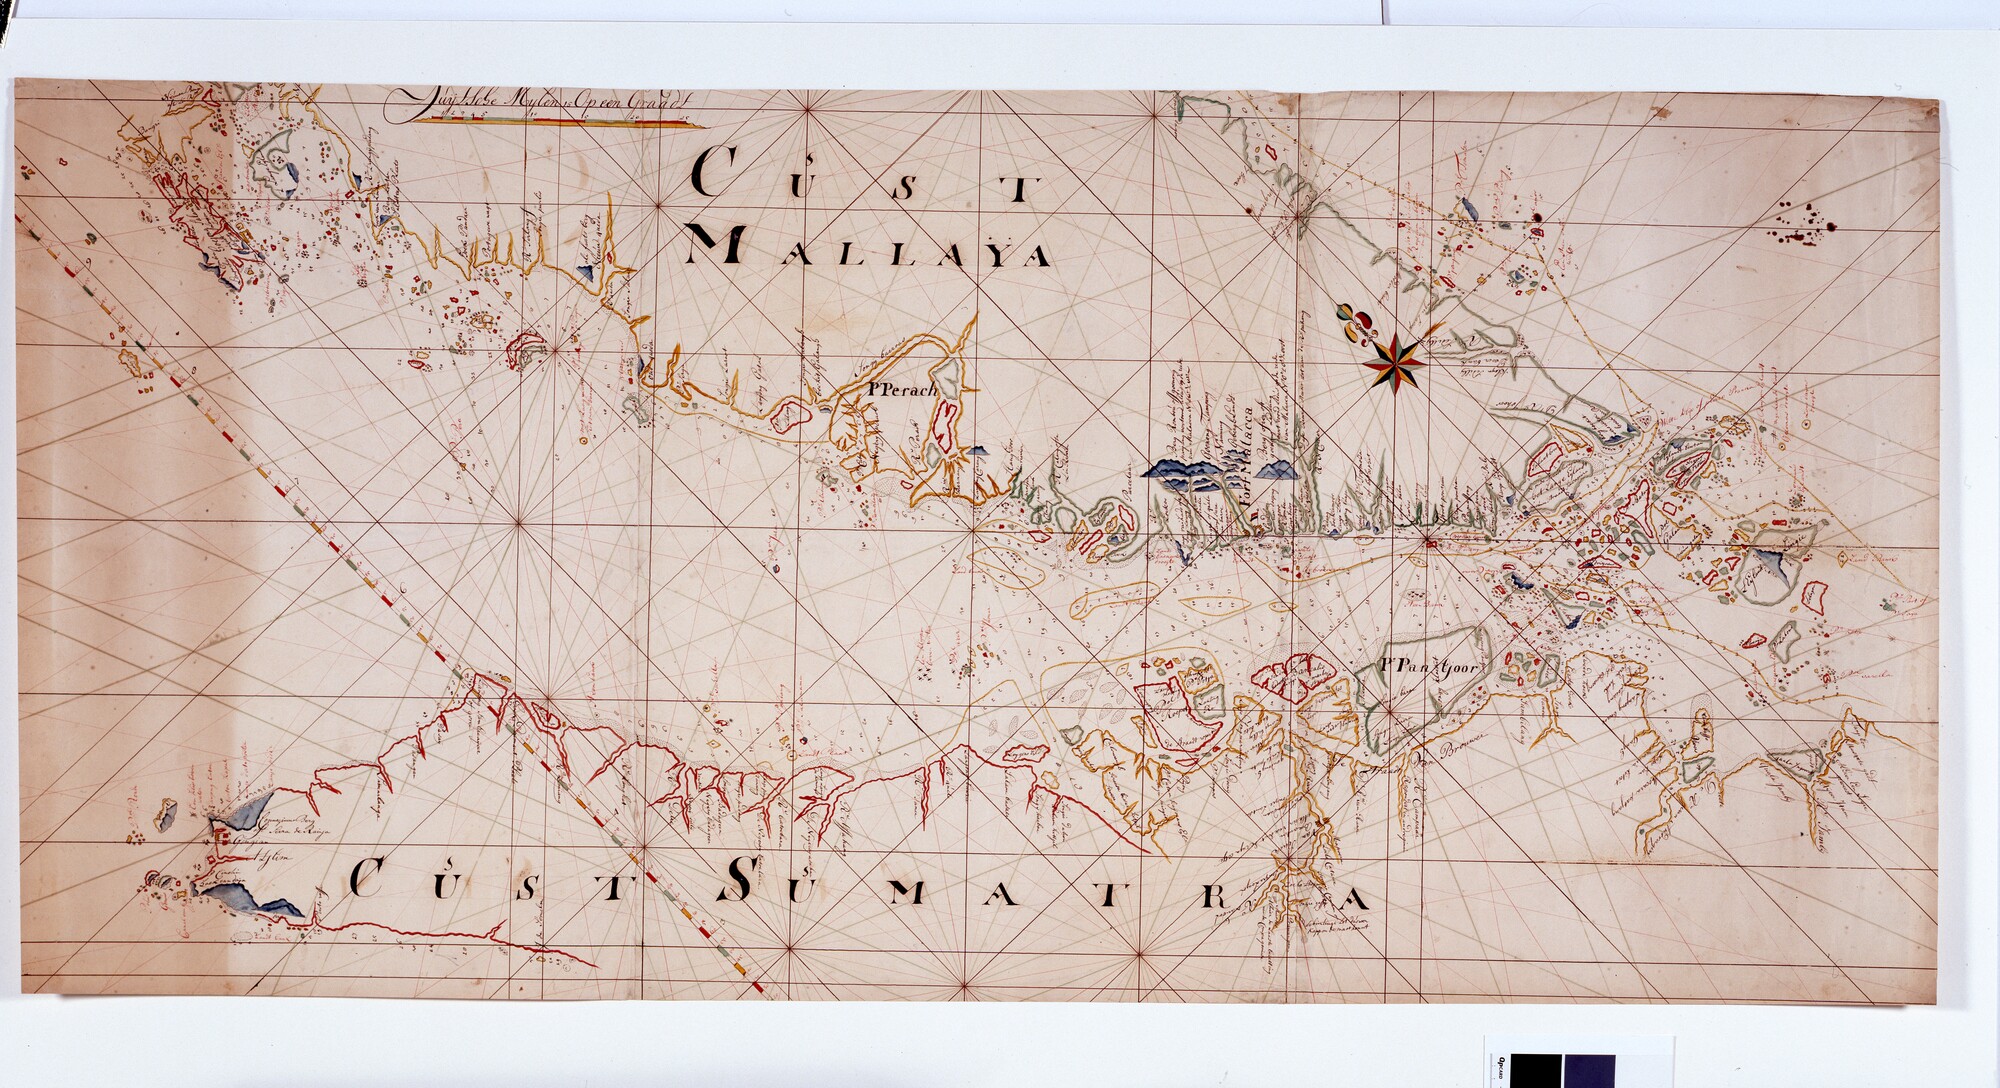 A.4974(01); Gekleurde handschriftkaart van Straat Malakka met een gedeelte van de kust van Sumatra en Malakka, tussen Poulu Rondo en Singapore; zeekaart